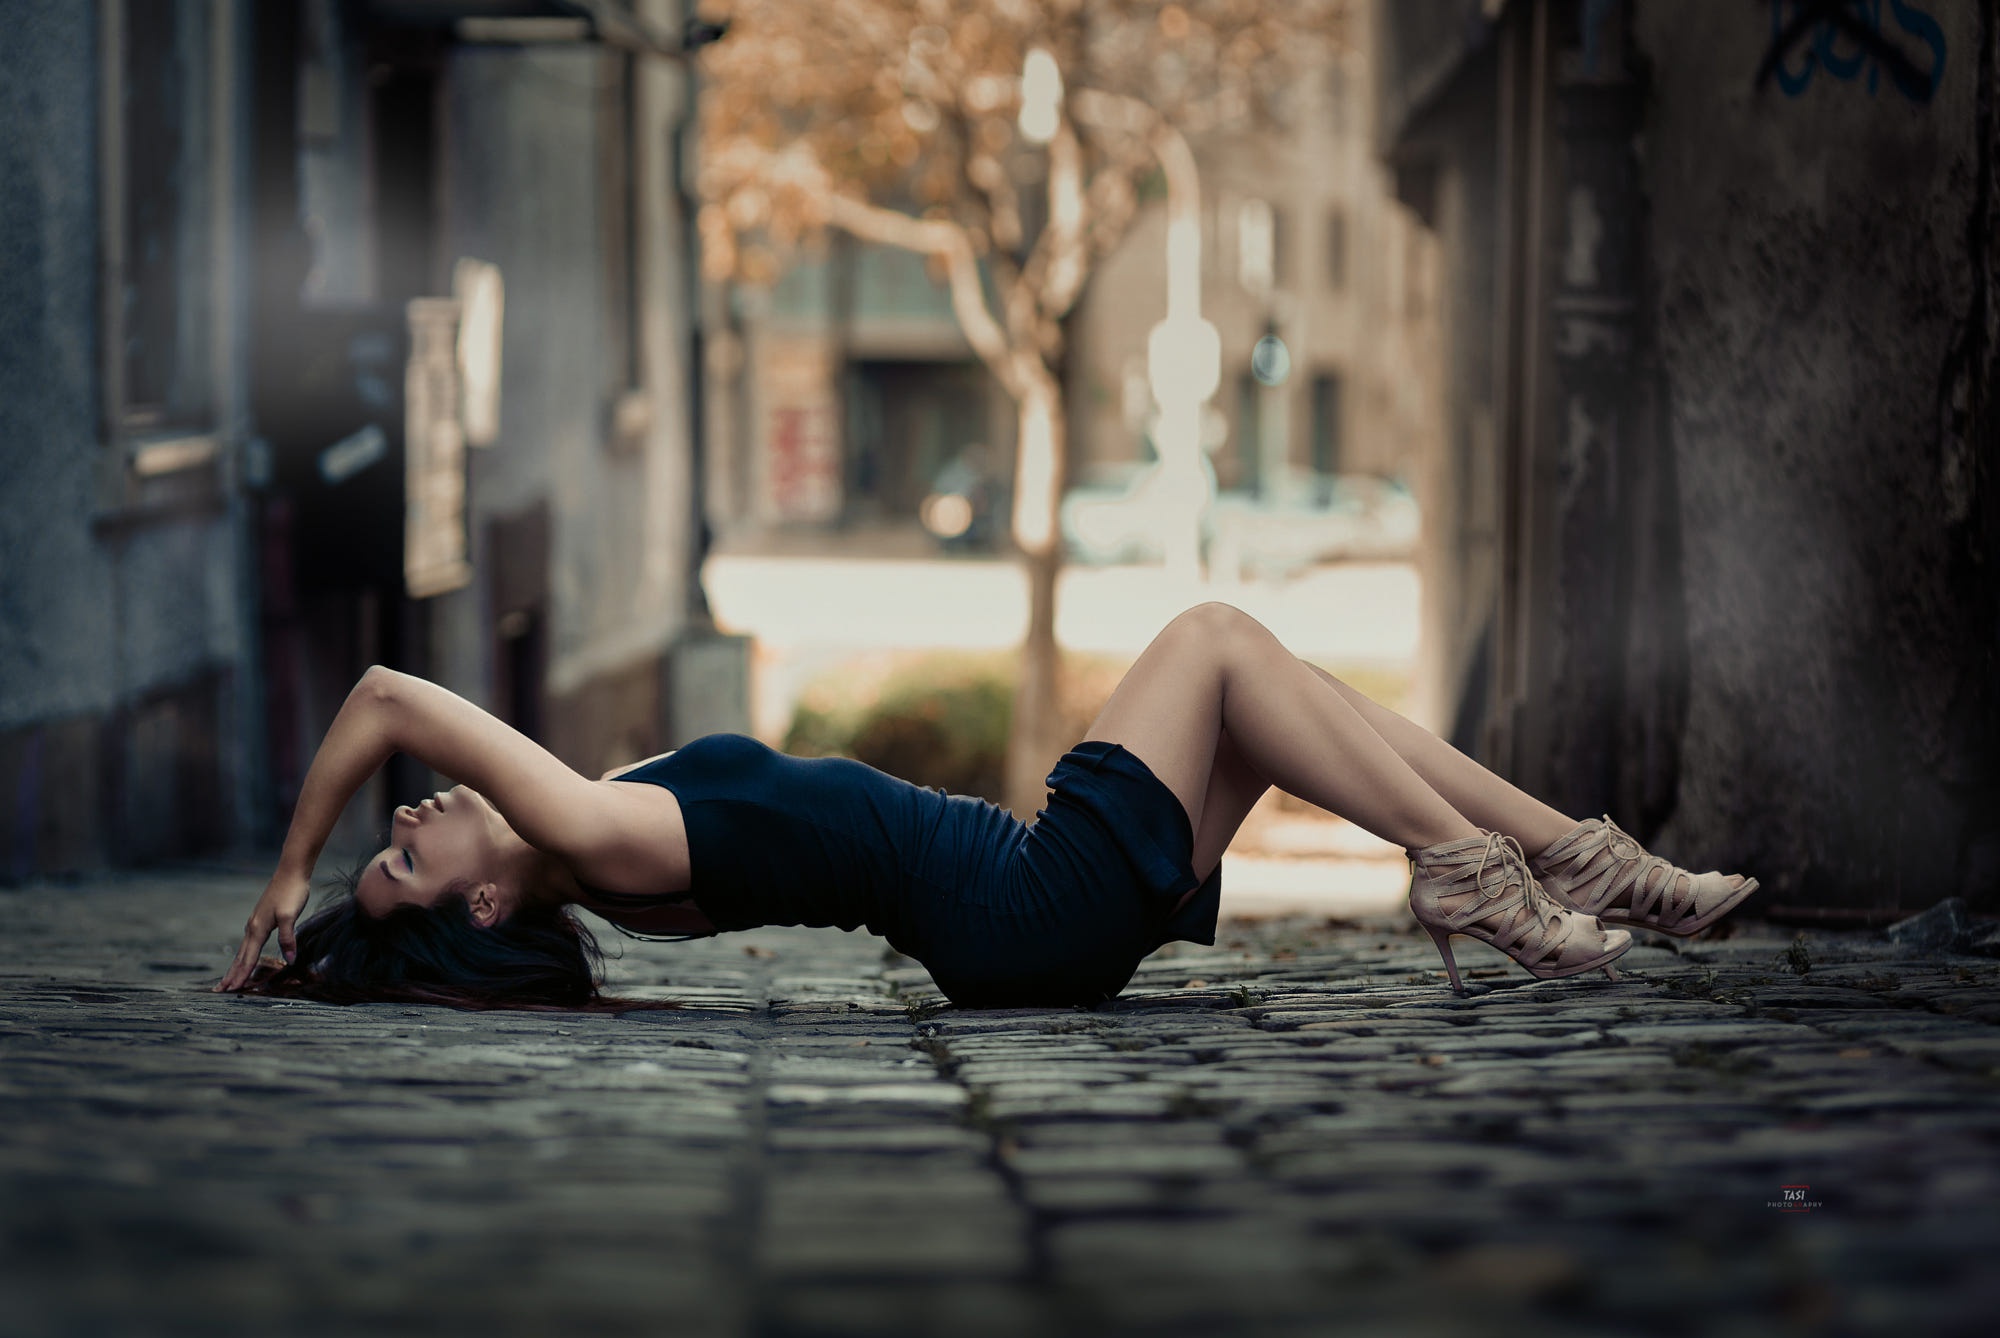 Women Model City Urban Legs Women Outdoors Alleyway Tasos Ioannou 2000x1338